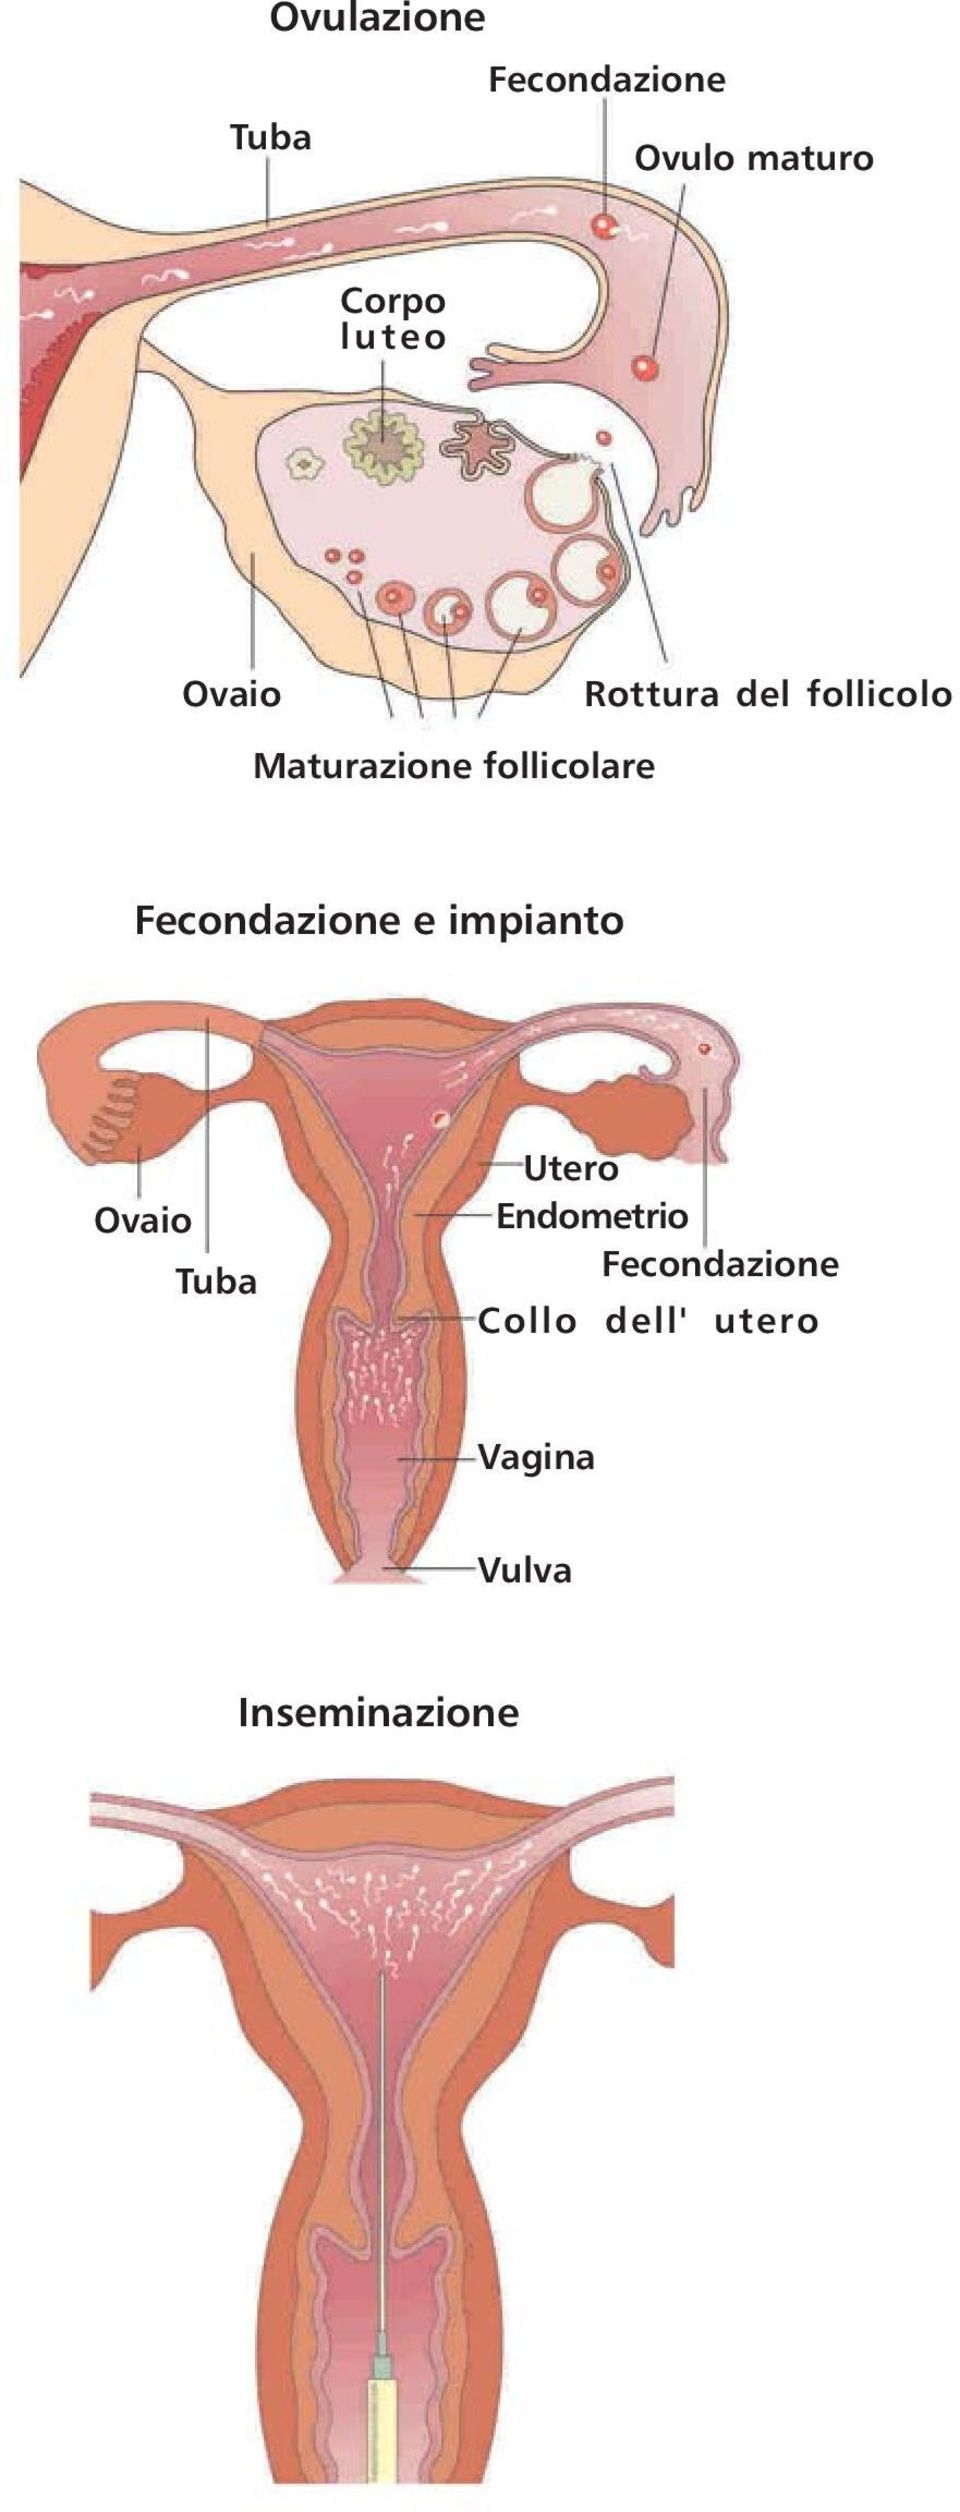 Fecondazione e impianto Ovaio Tuba Utero Endometrio